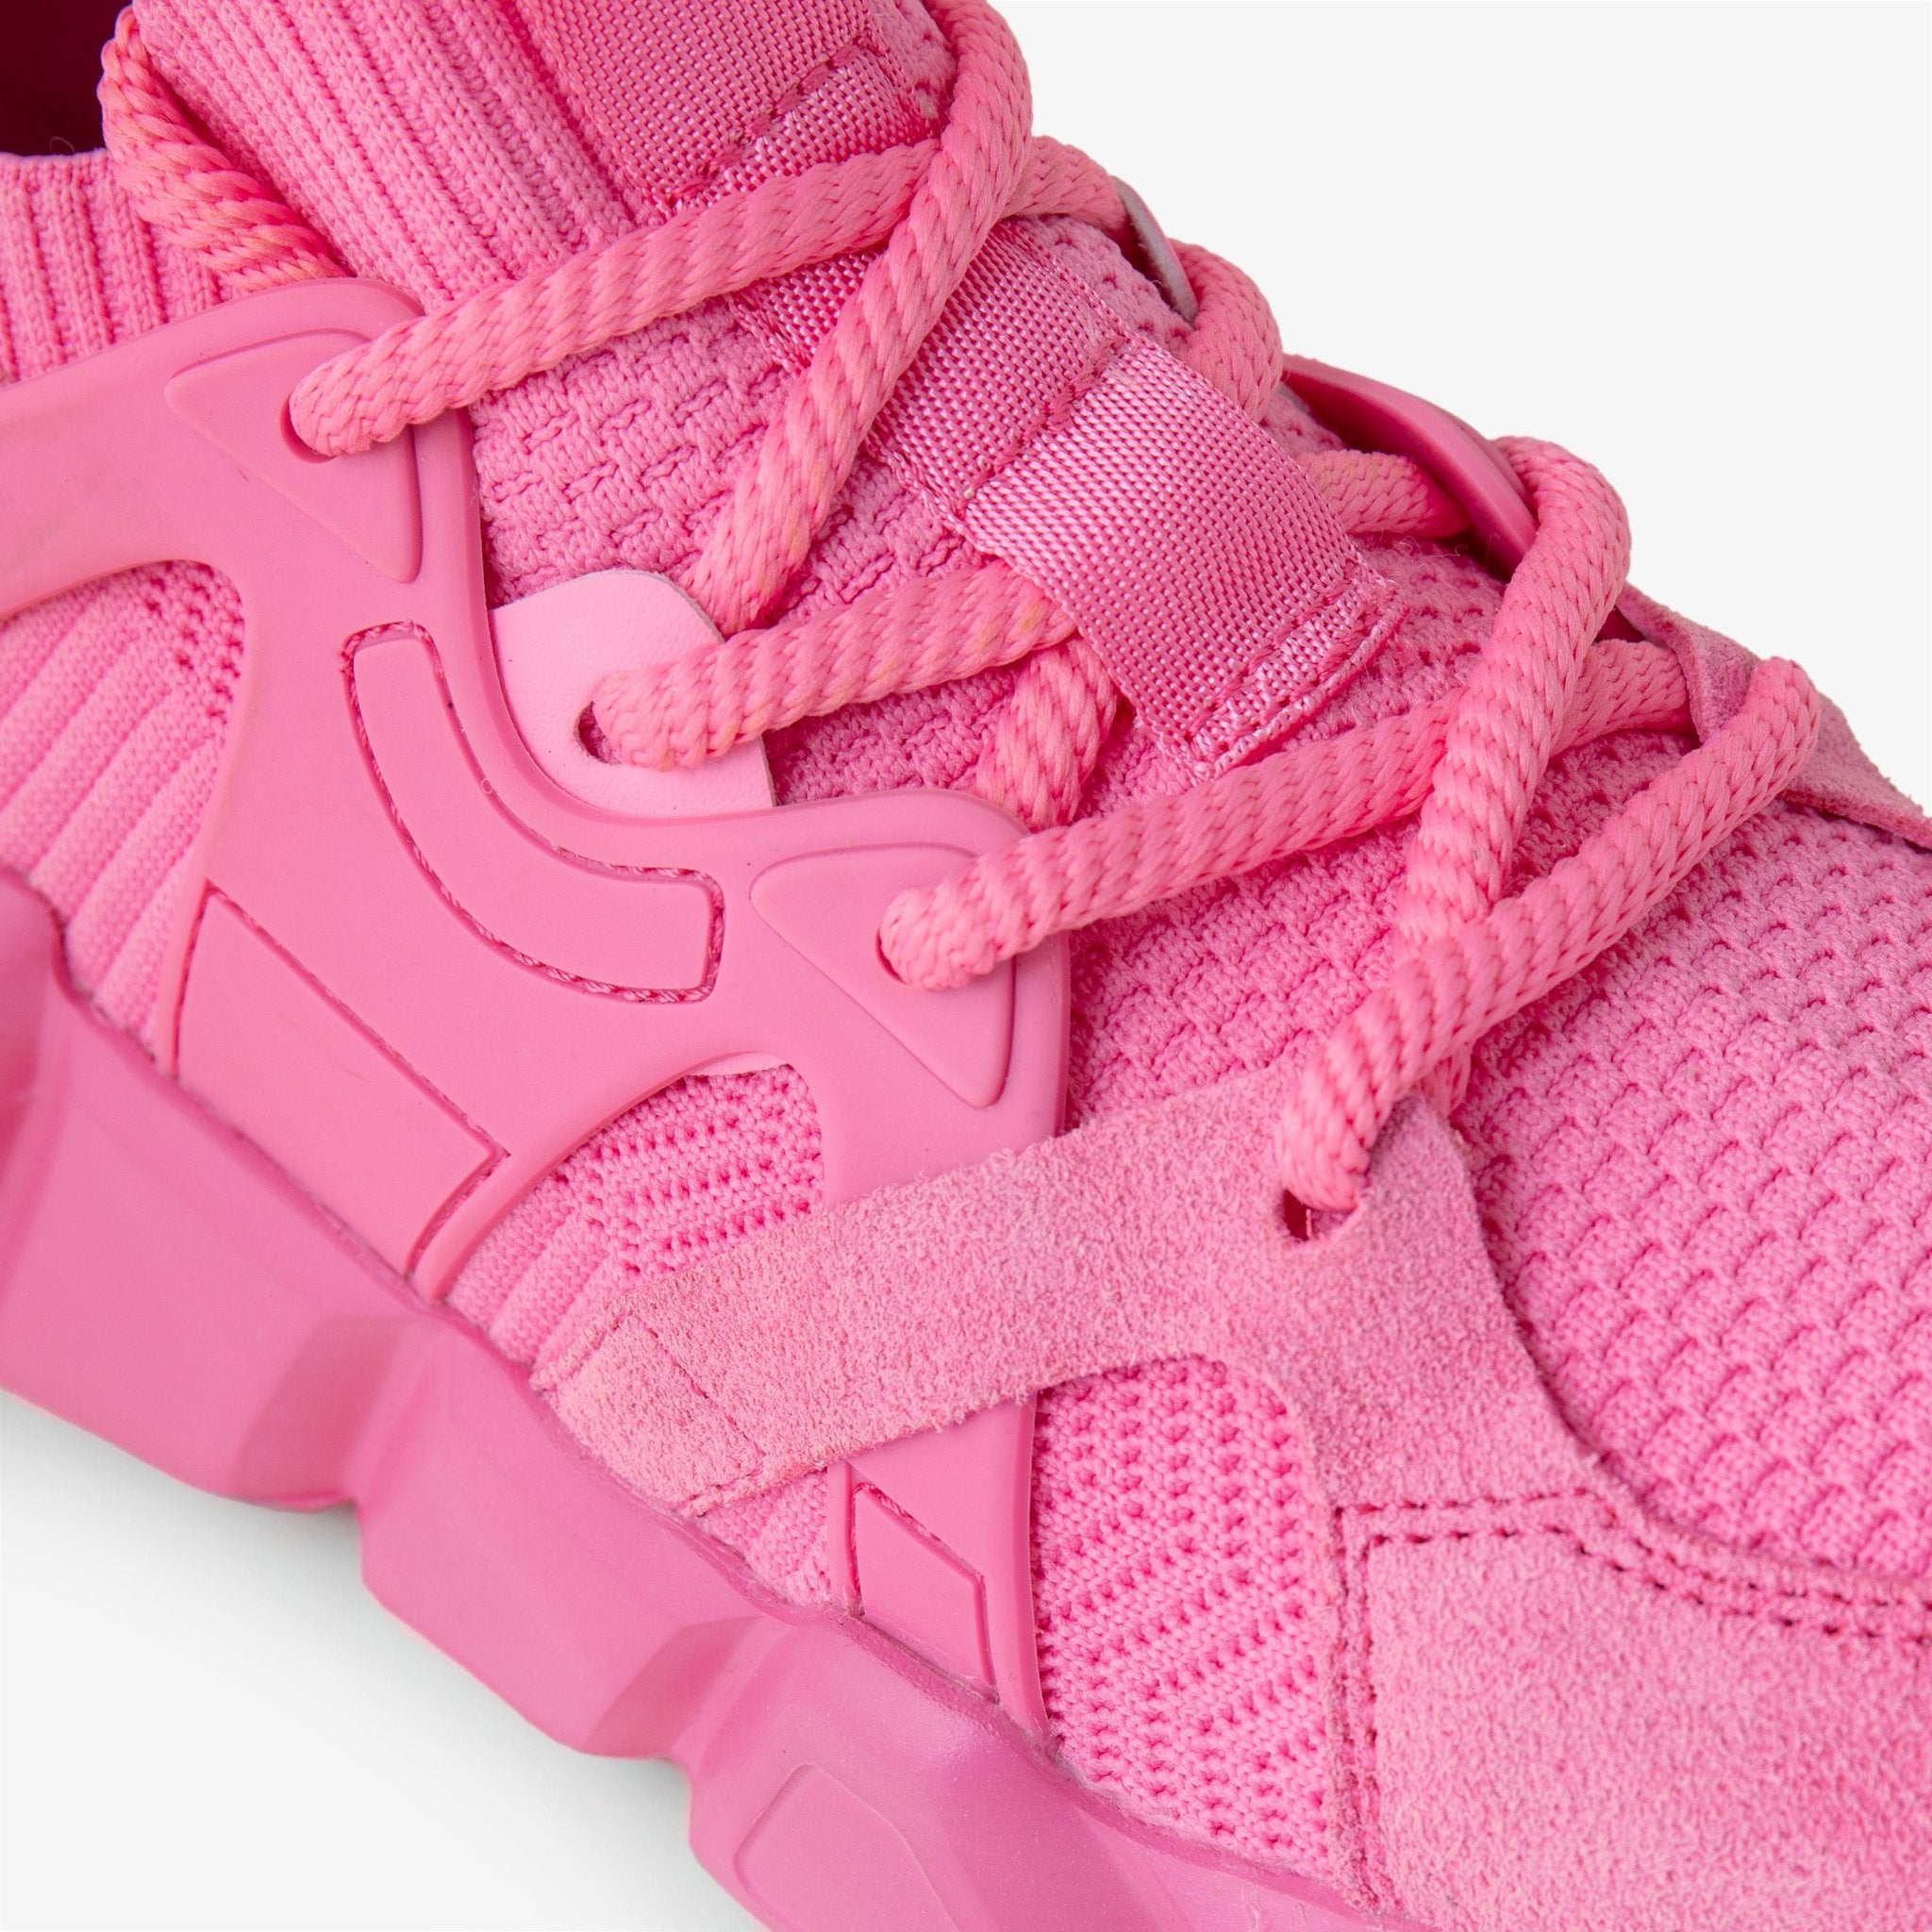 Gano Z Pink Sneaker [PRE ORDER] Forgano –